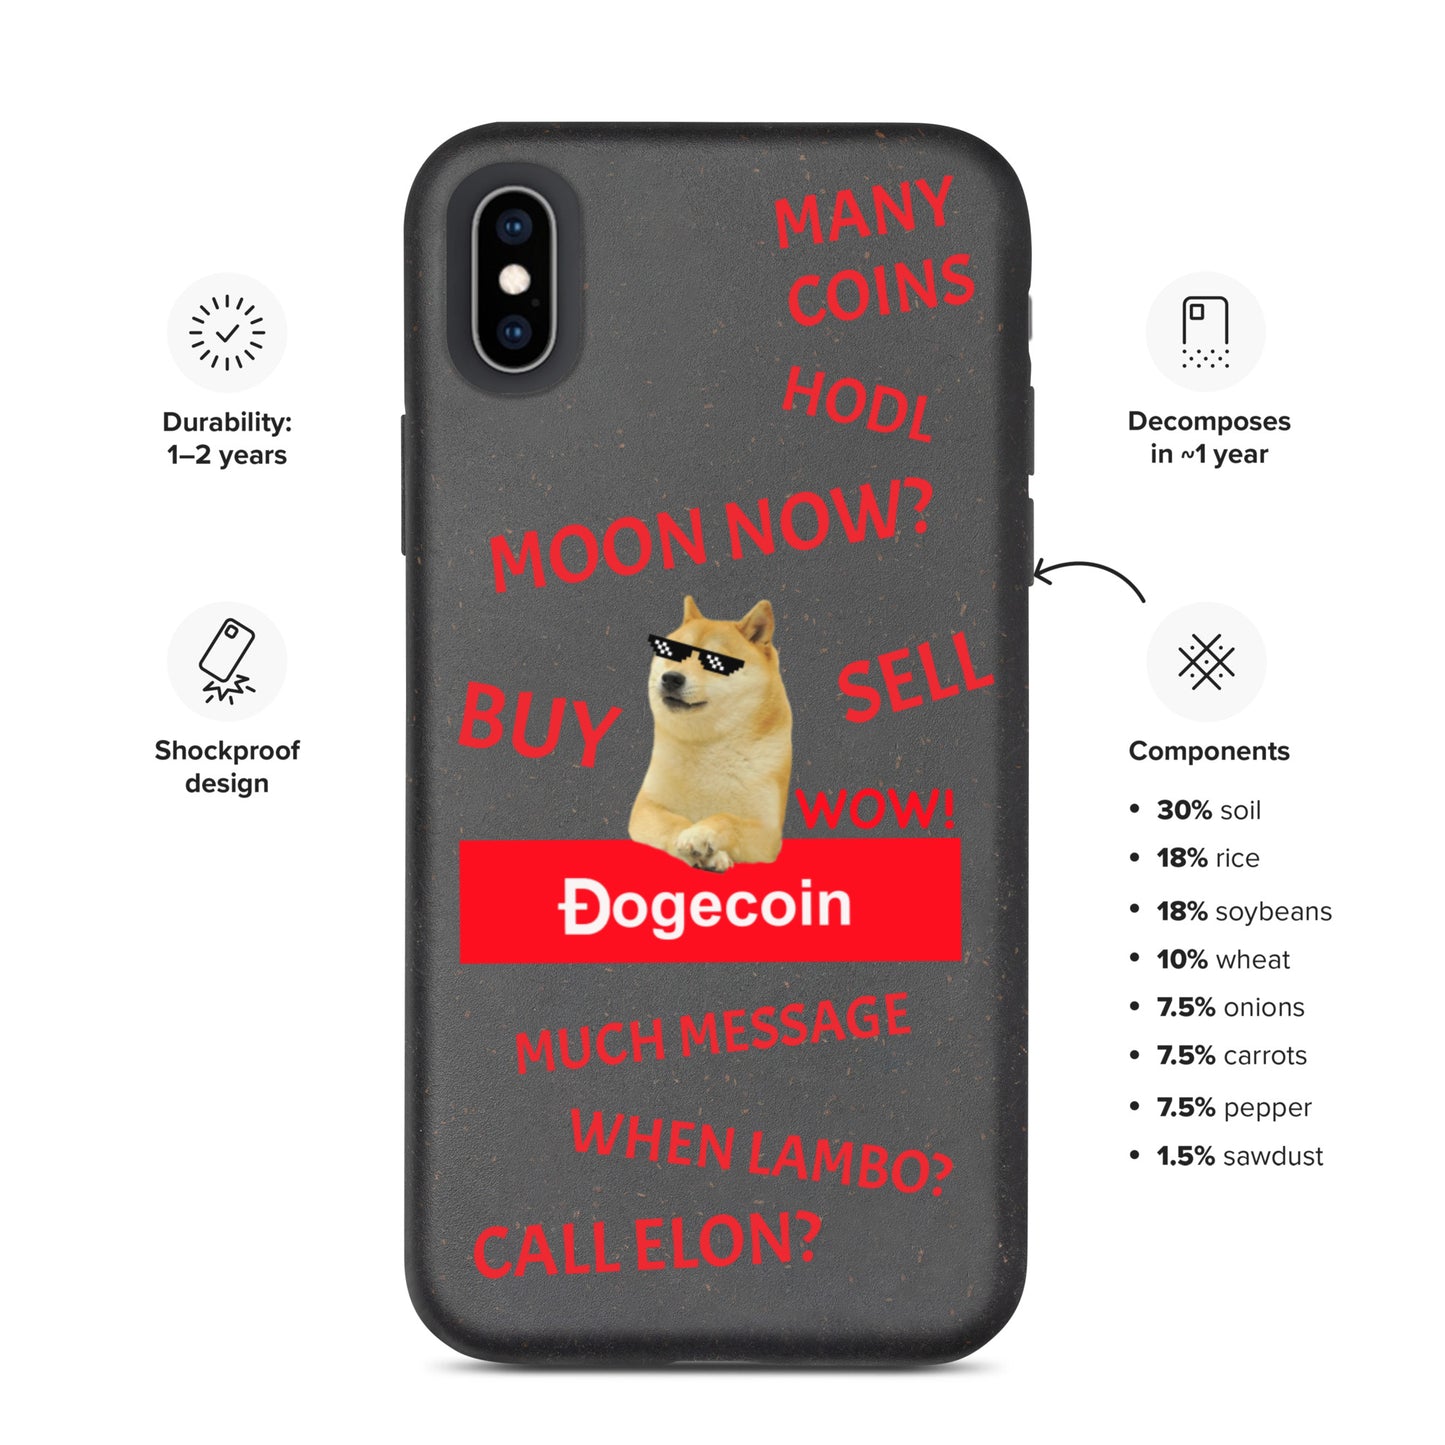 DOGECOIN CALL ELON iPhone Case - biologisch abbaubar